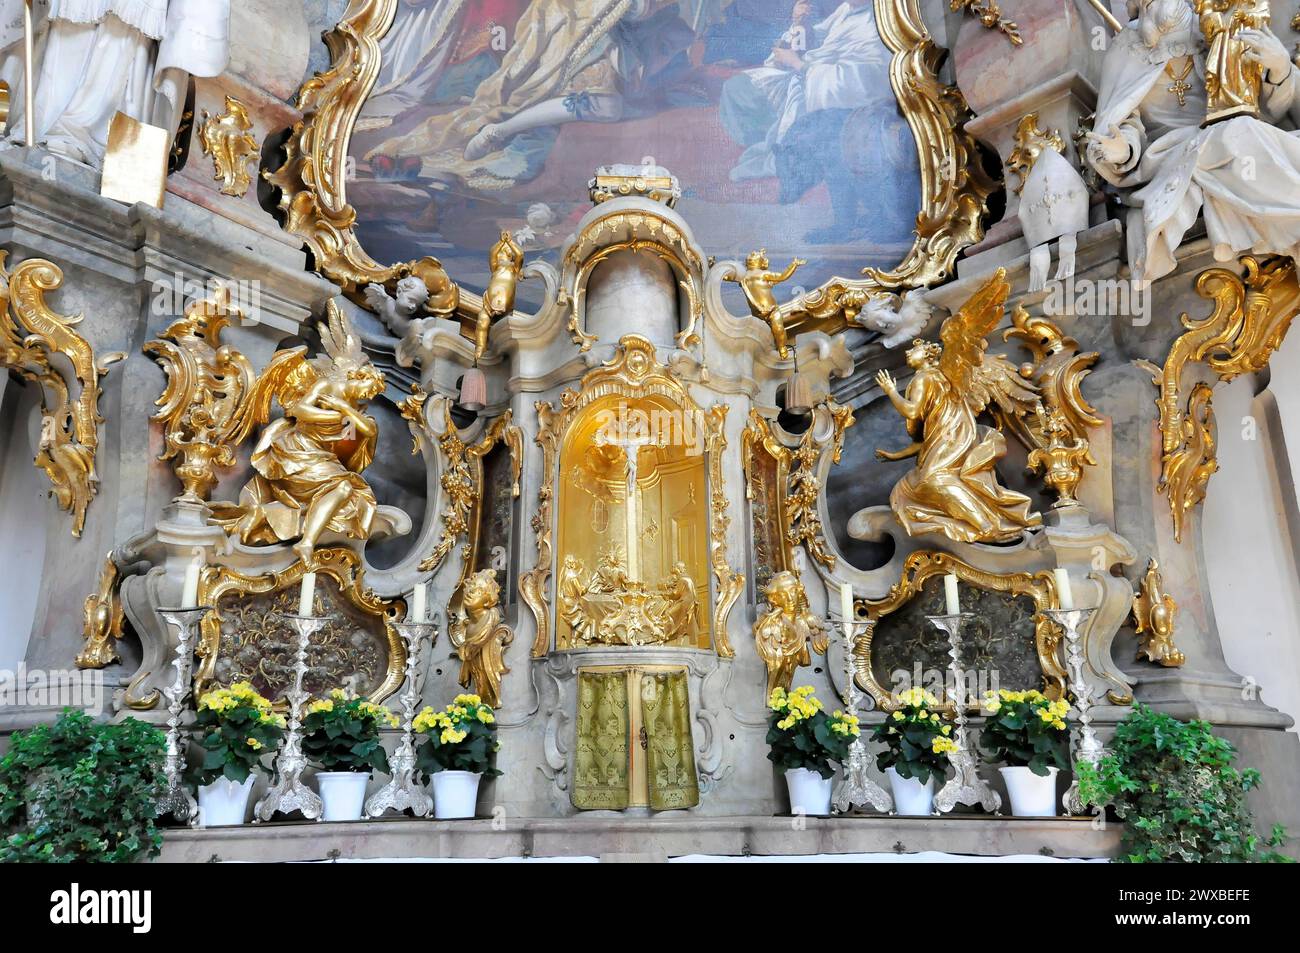 Monastero Ettal, muro d'altare barocco con sculture d'angelo dorato in una chiesa, Basilica Ettal, chiesa di pellegrinaggio, Baviera, Germania Foto Stock